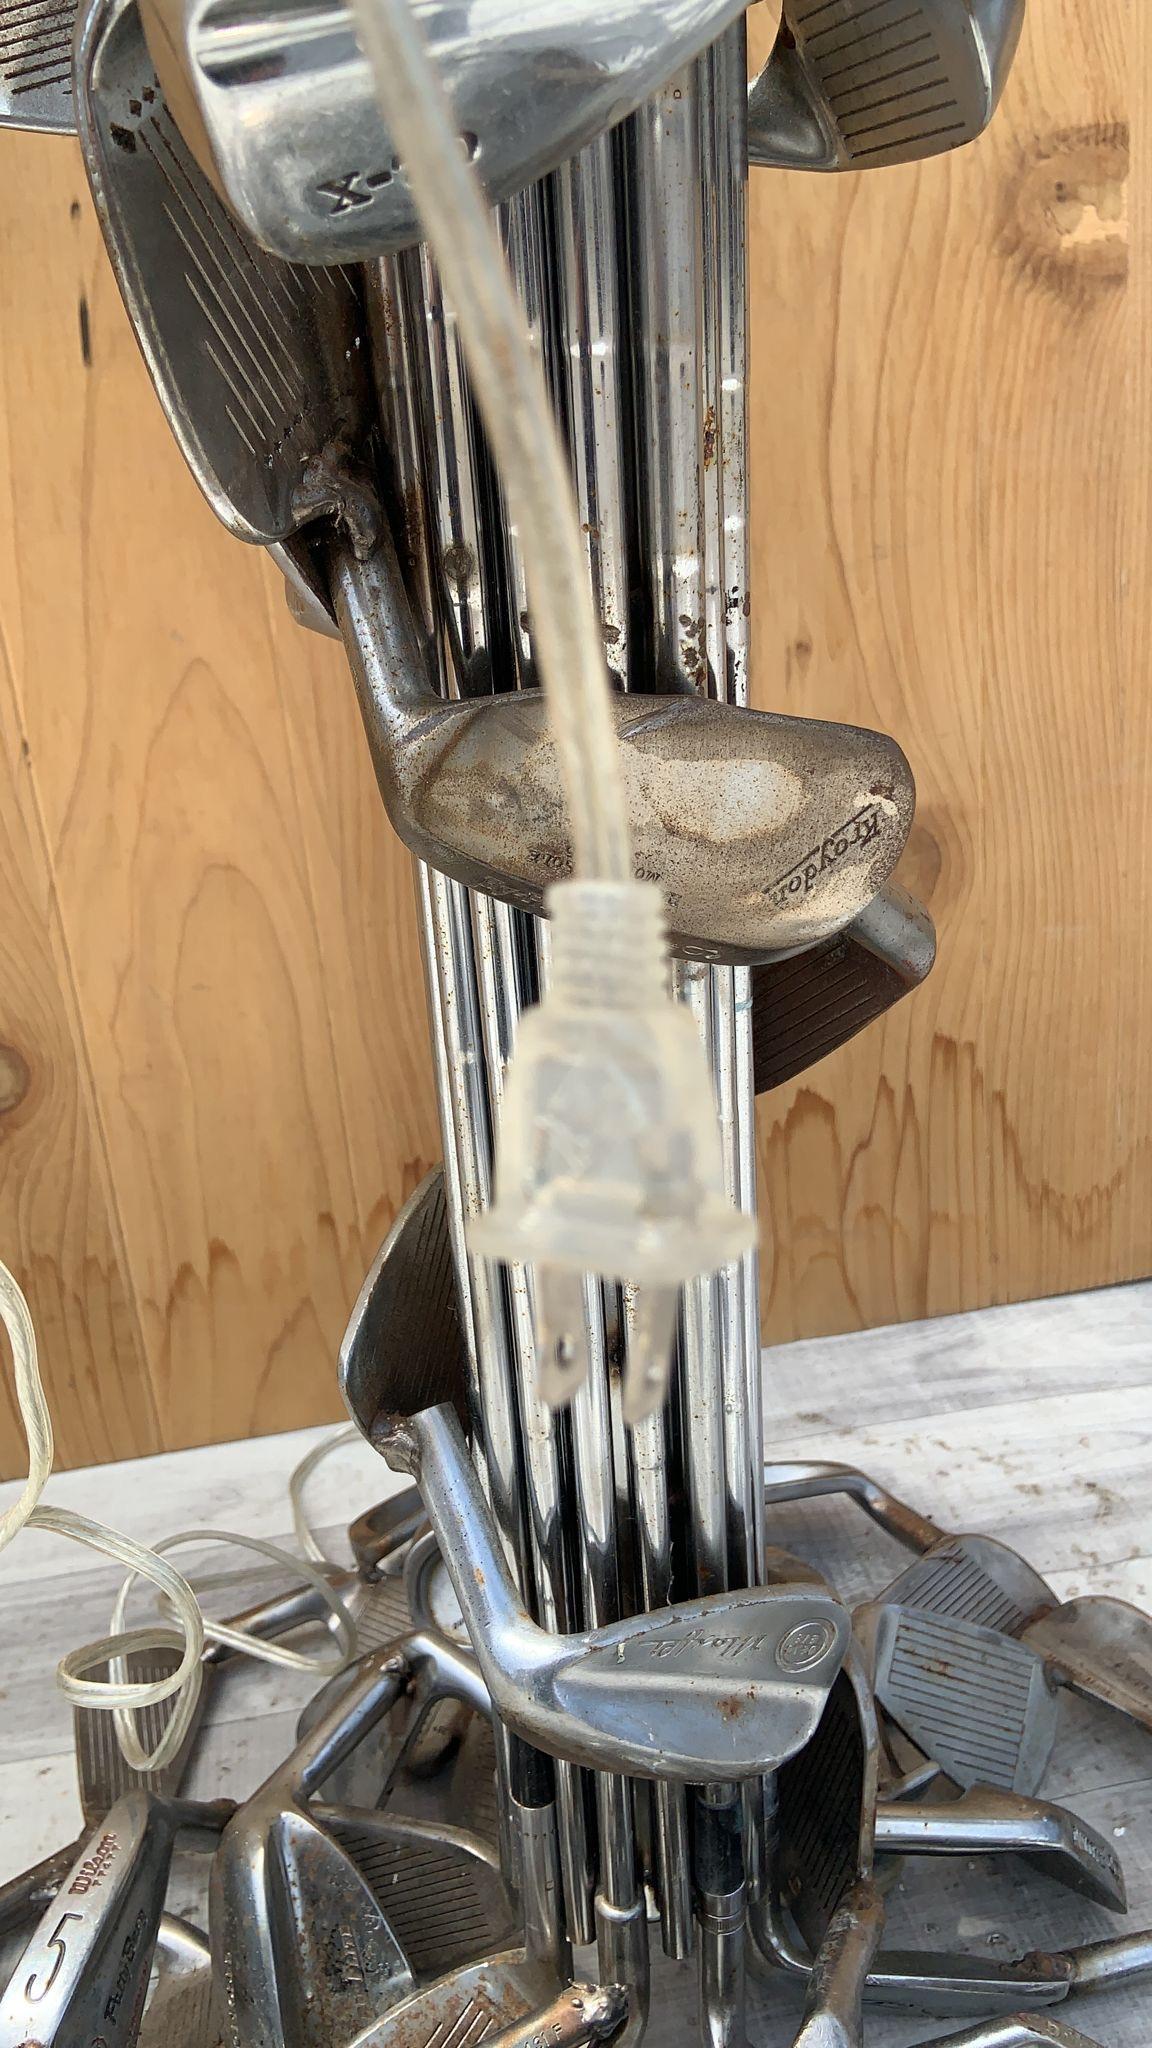 Lámpara de mesa vintage forjada a mano de palo de golf alto con pantalla de silueta de palo de golf

Esta lámpara se forjó por completo con acero inoxidable Vintage Gulf Clubs, desde su base hasta su pantalla. Es una pieza increíblemente robusta.